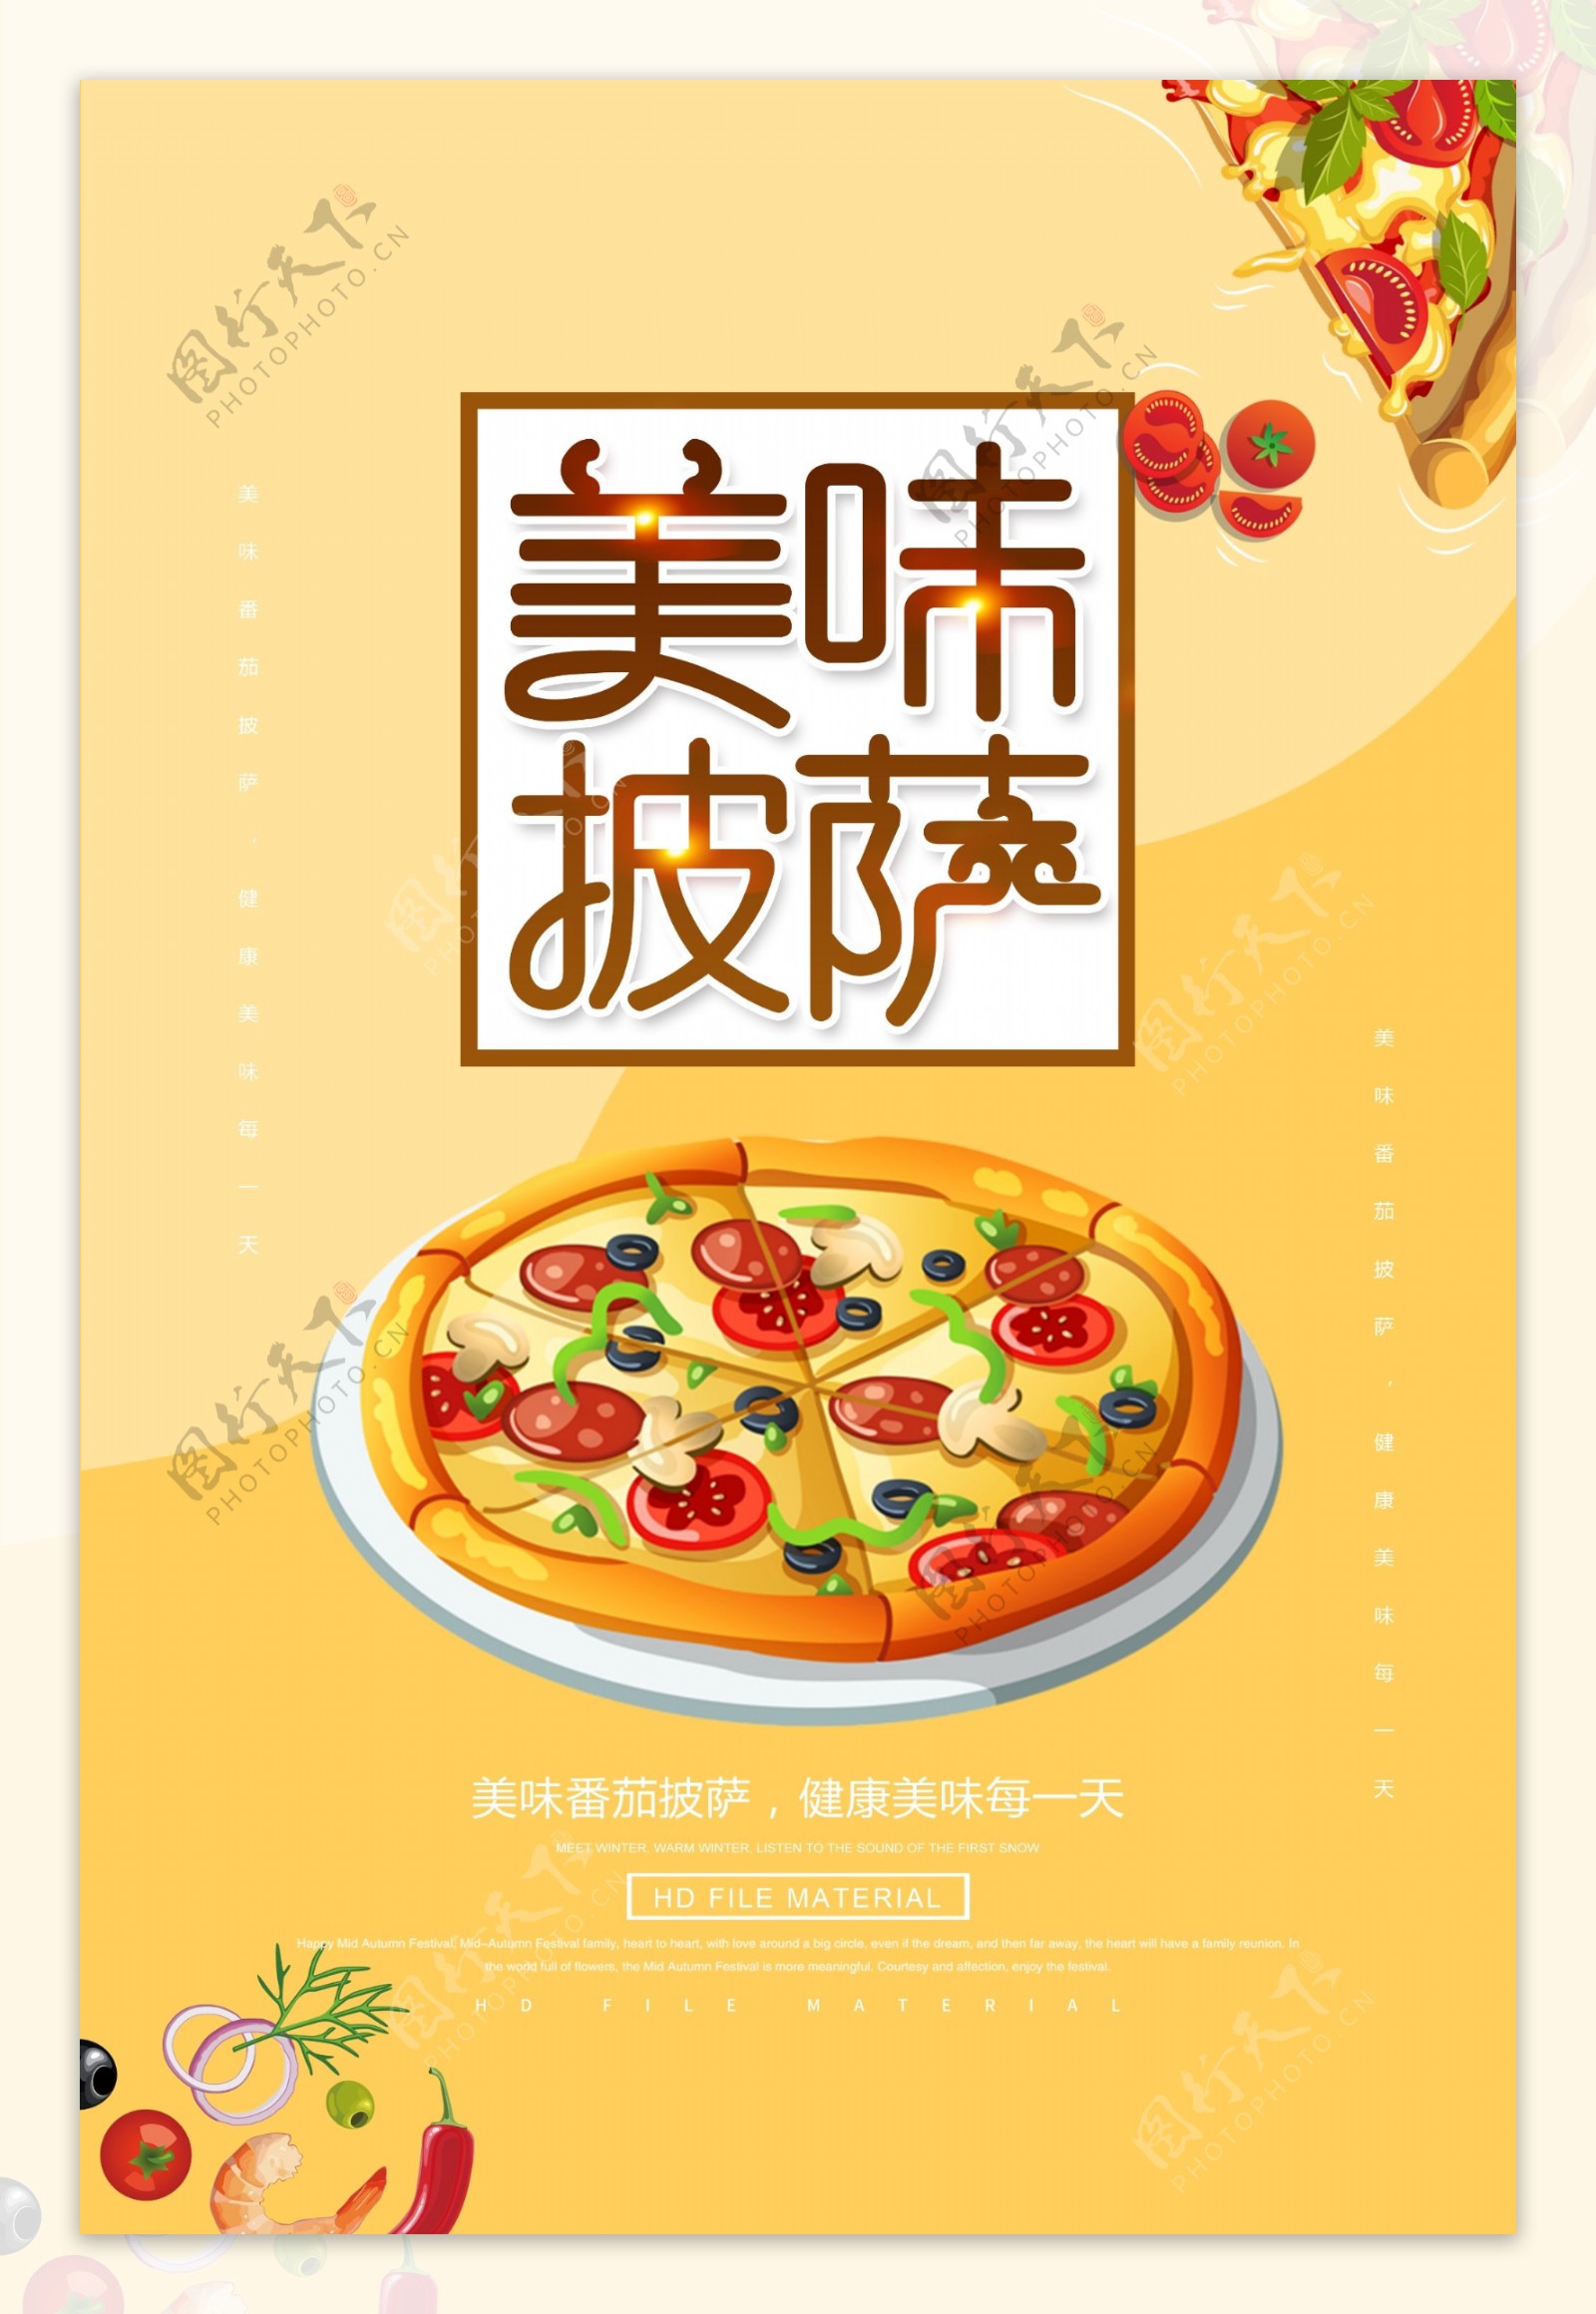 西式美食披萨宣传海报